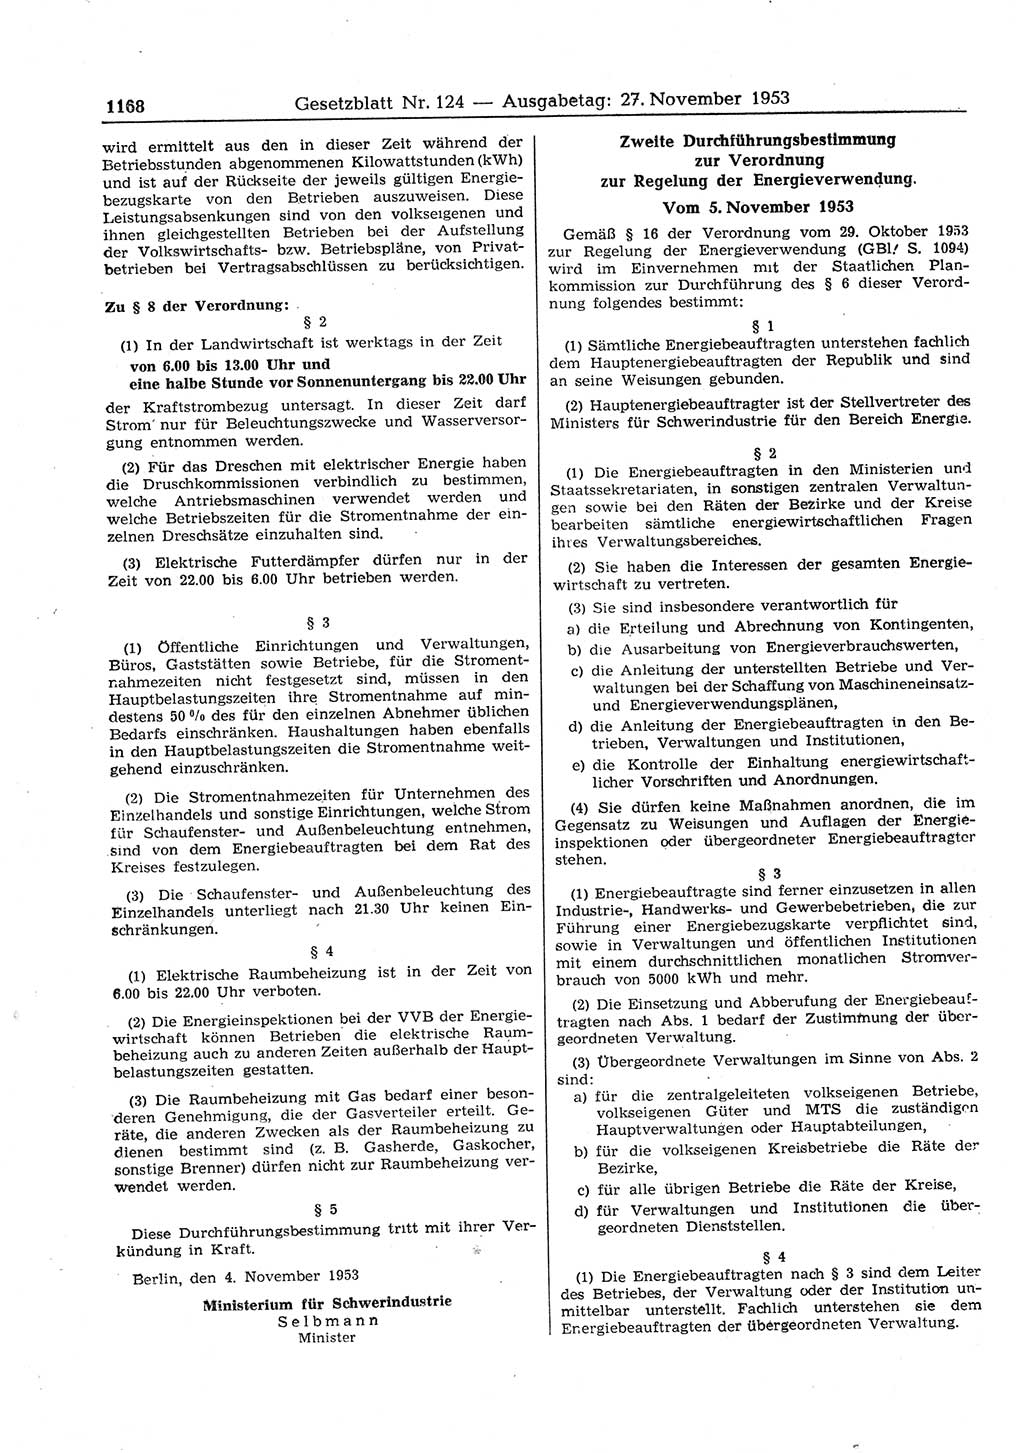 Gesetzblatt (GBl.) der Deutschen Demokratischen Republik (DDR) 1953, Seite 1168 (GBl. DDR 1953, S. 1168)